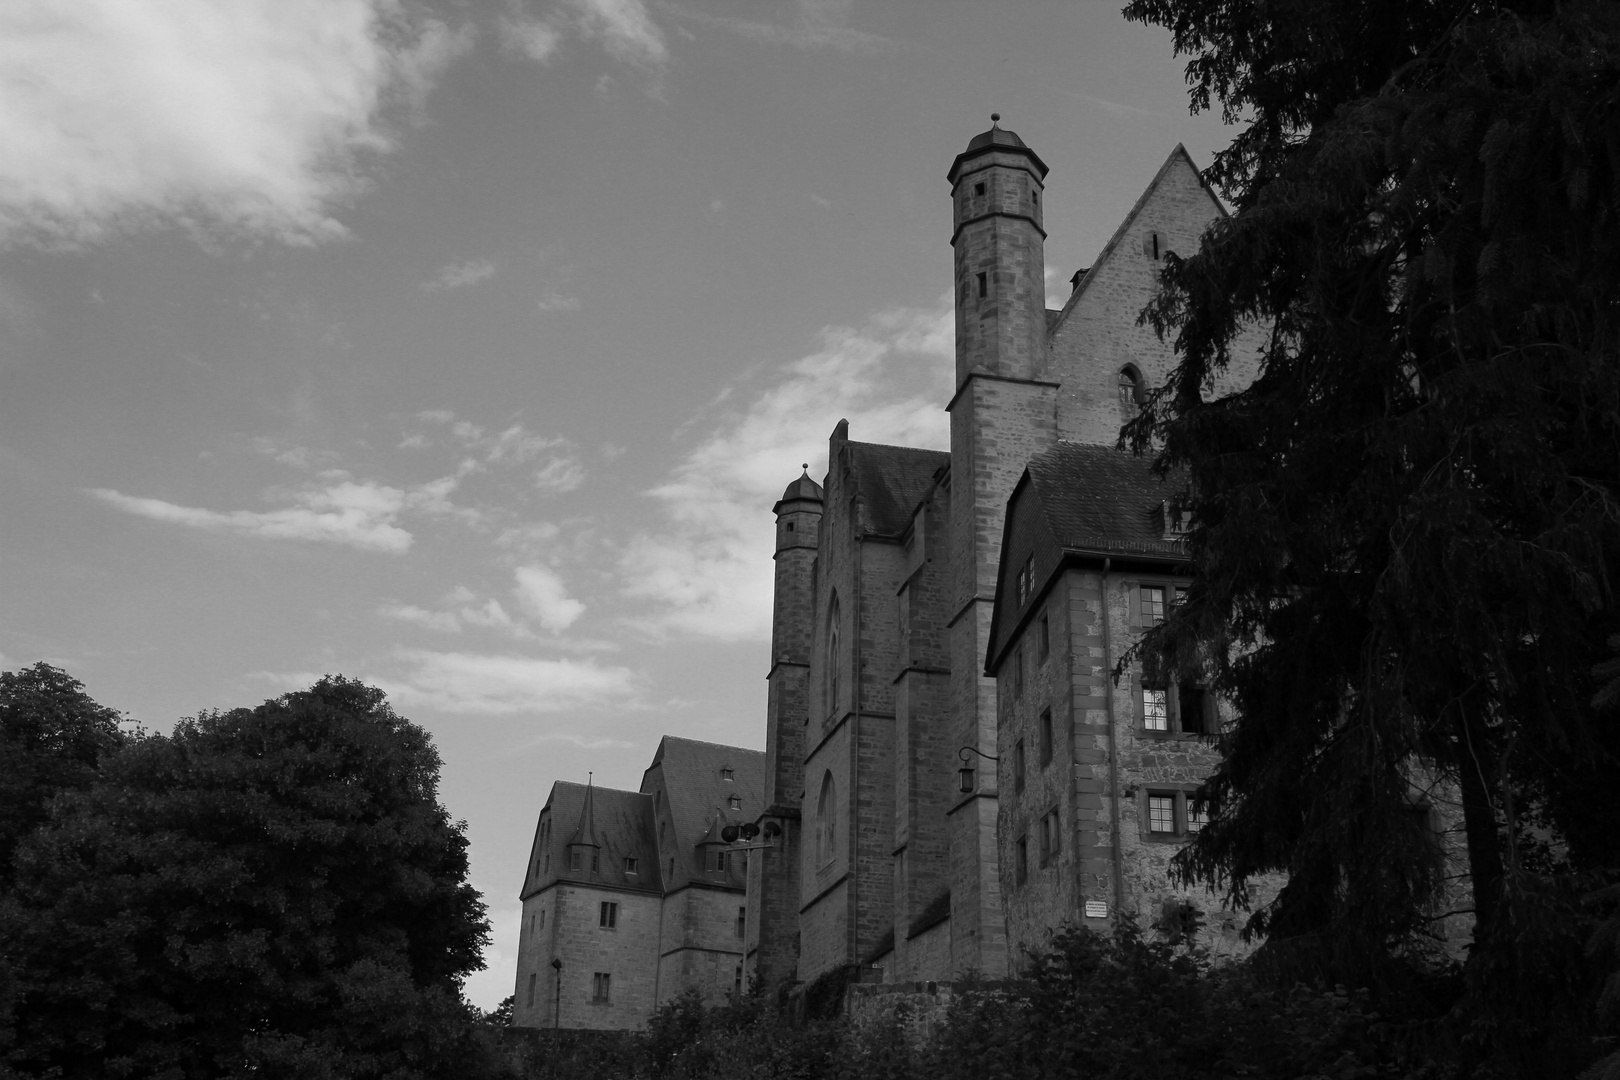 Mystic castle